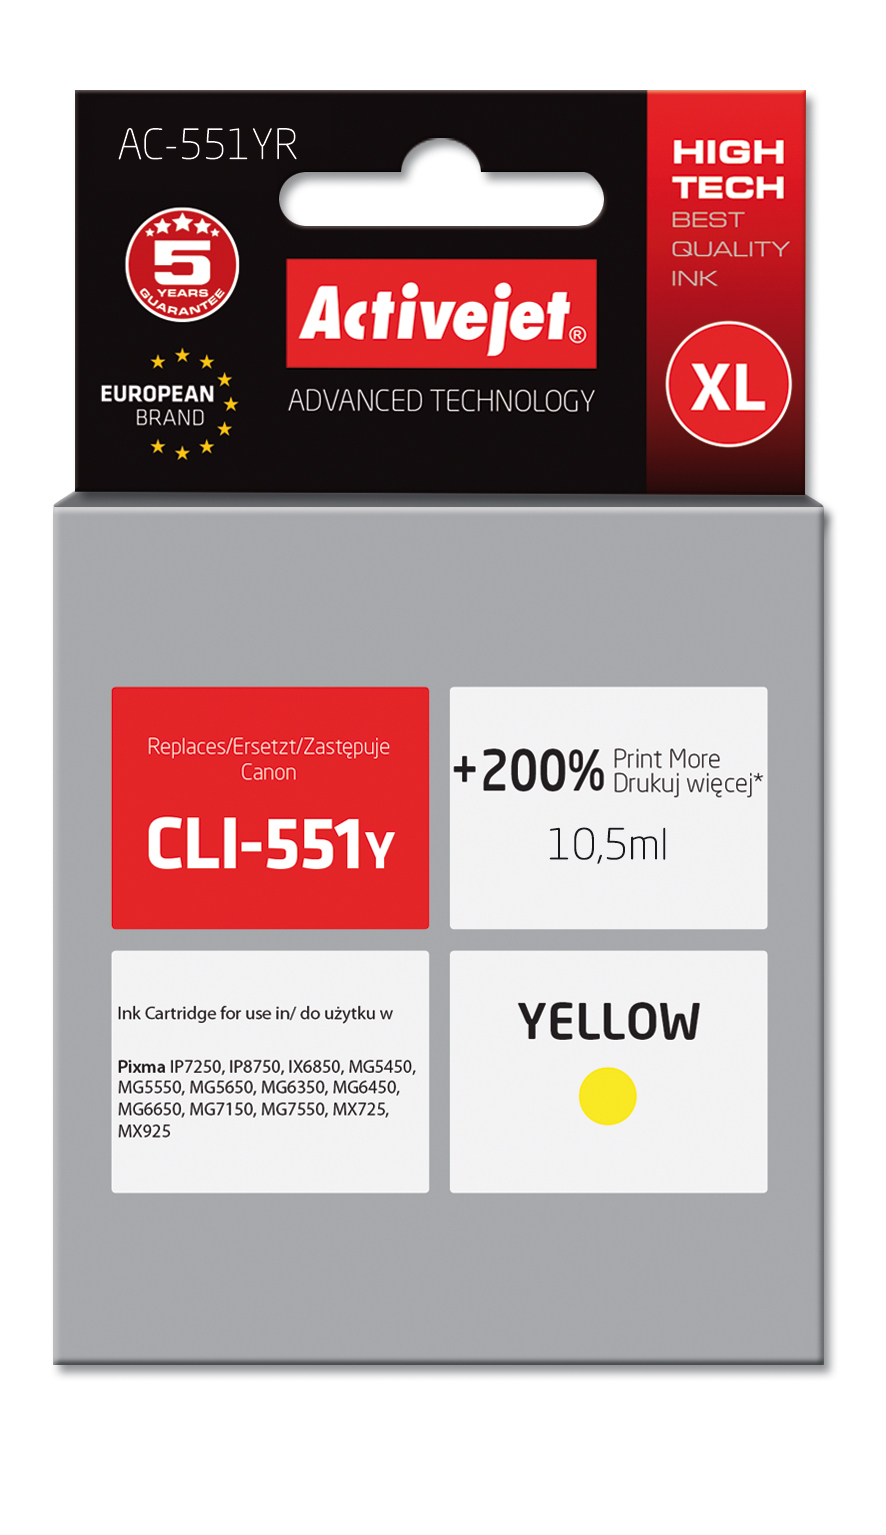 Tusz Activejet AC-551YR do drukarki Canon, Zamiennik Canon CLI-551Y;  Premium;  10,5ml;  żółty. Drukuje więcej o 200%.